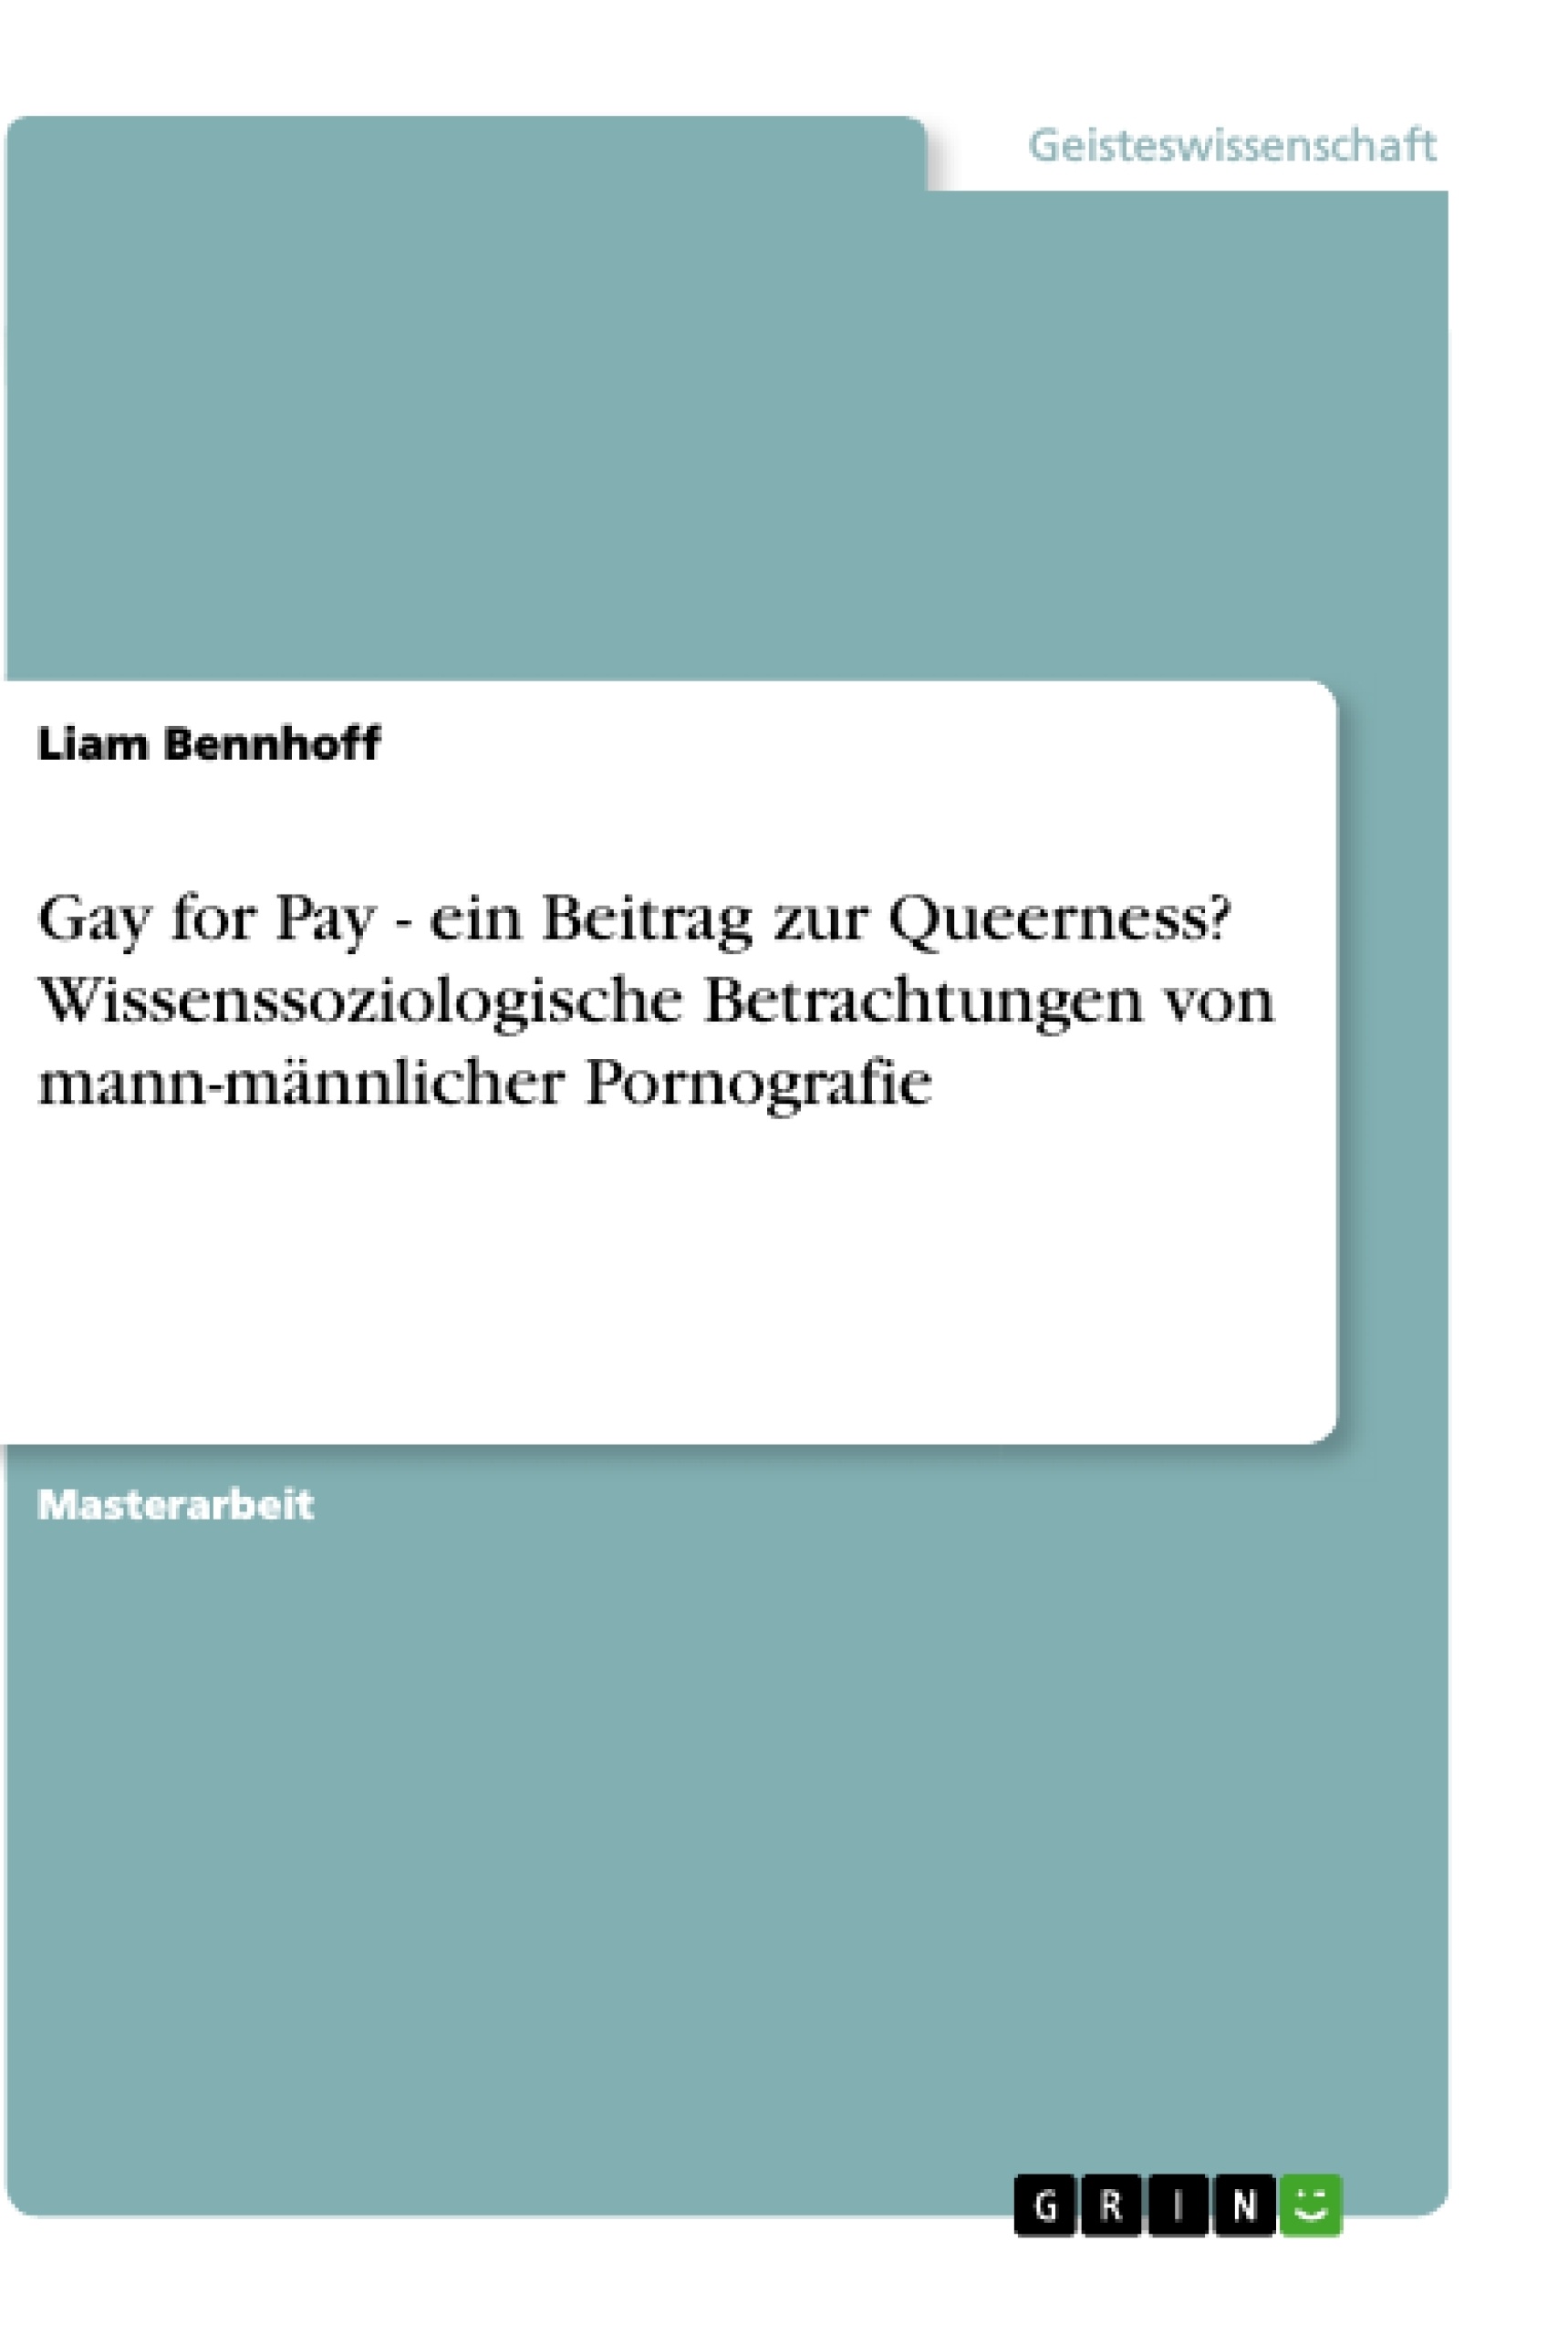 Titel: Gay for Pay - ein Beitrag zur Queerness? Wissenssoziologische Betrachtungen von mann-männlicher Pornografie